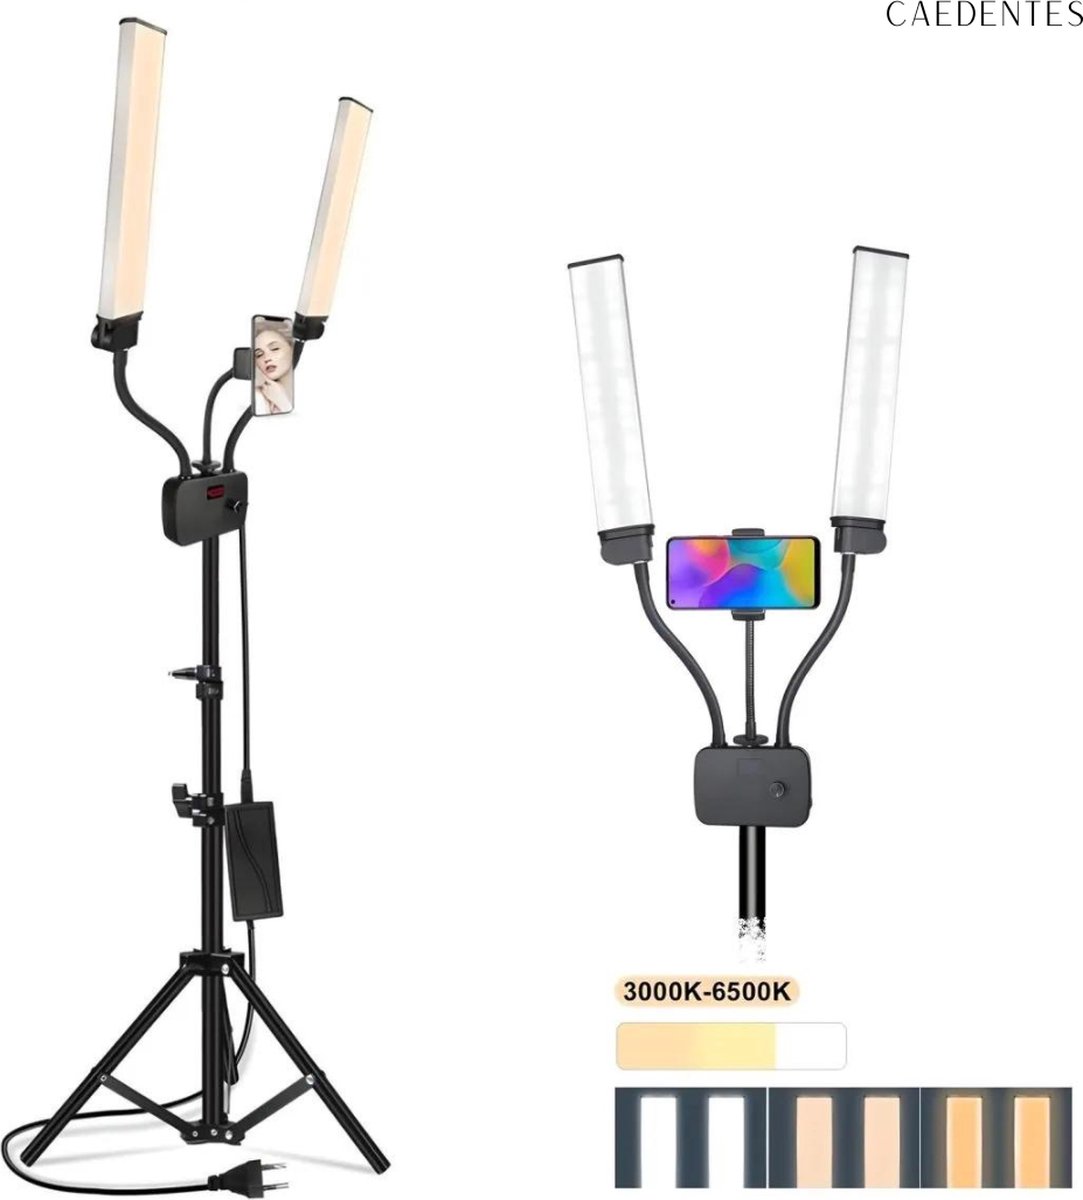 Caedentes Salon Lamp - Dubbelarmige LED-lamp met tripod & tafelstatief - Beauty lamp - Studio lamp - Wimper lamp - Lash lamp - Multimedia lamp - Behandel lamp - Medische lamp - Make up lamp - Tattoo lamp - Nagel lamp - Barber lamp - Caedentes